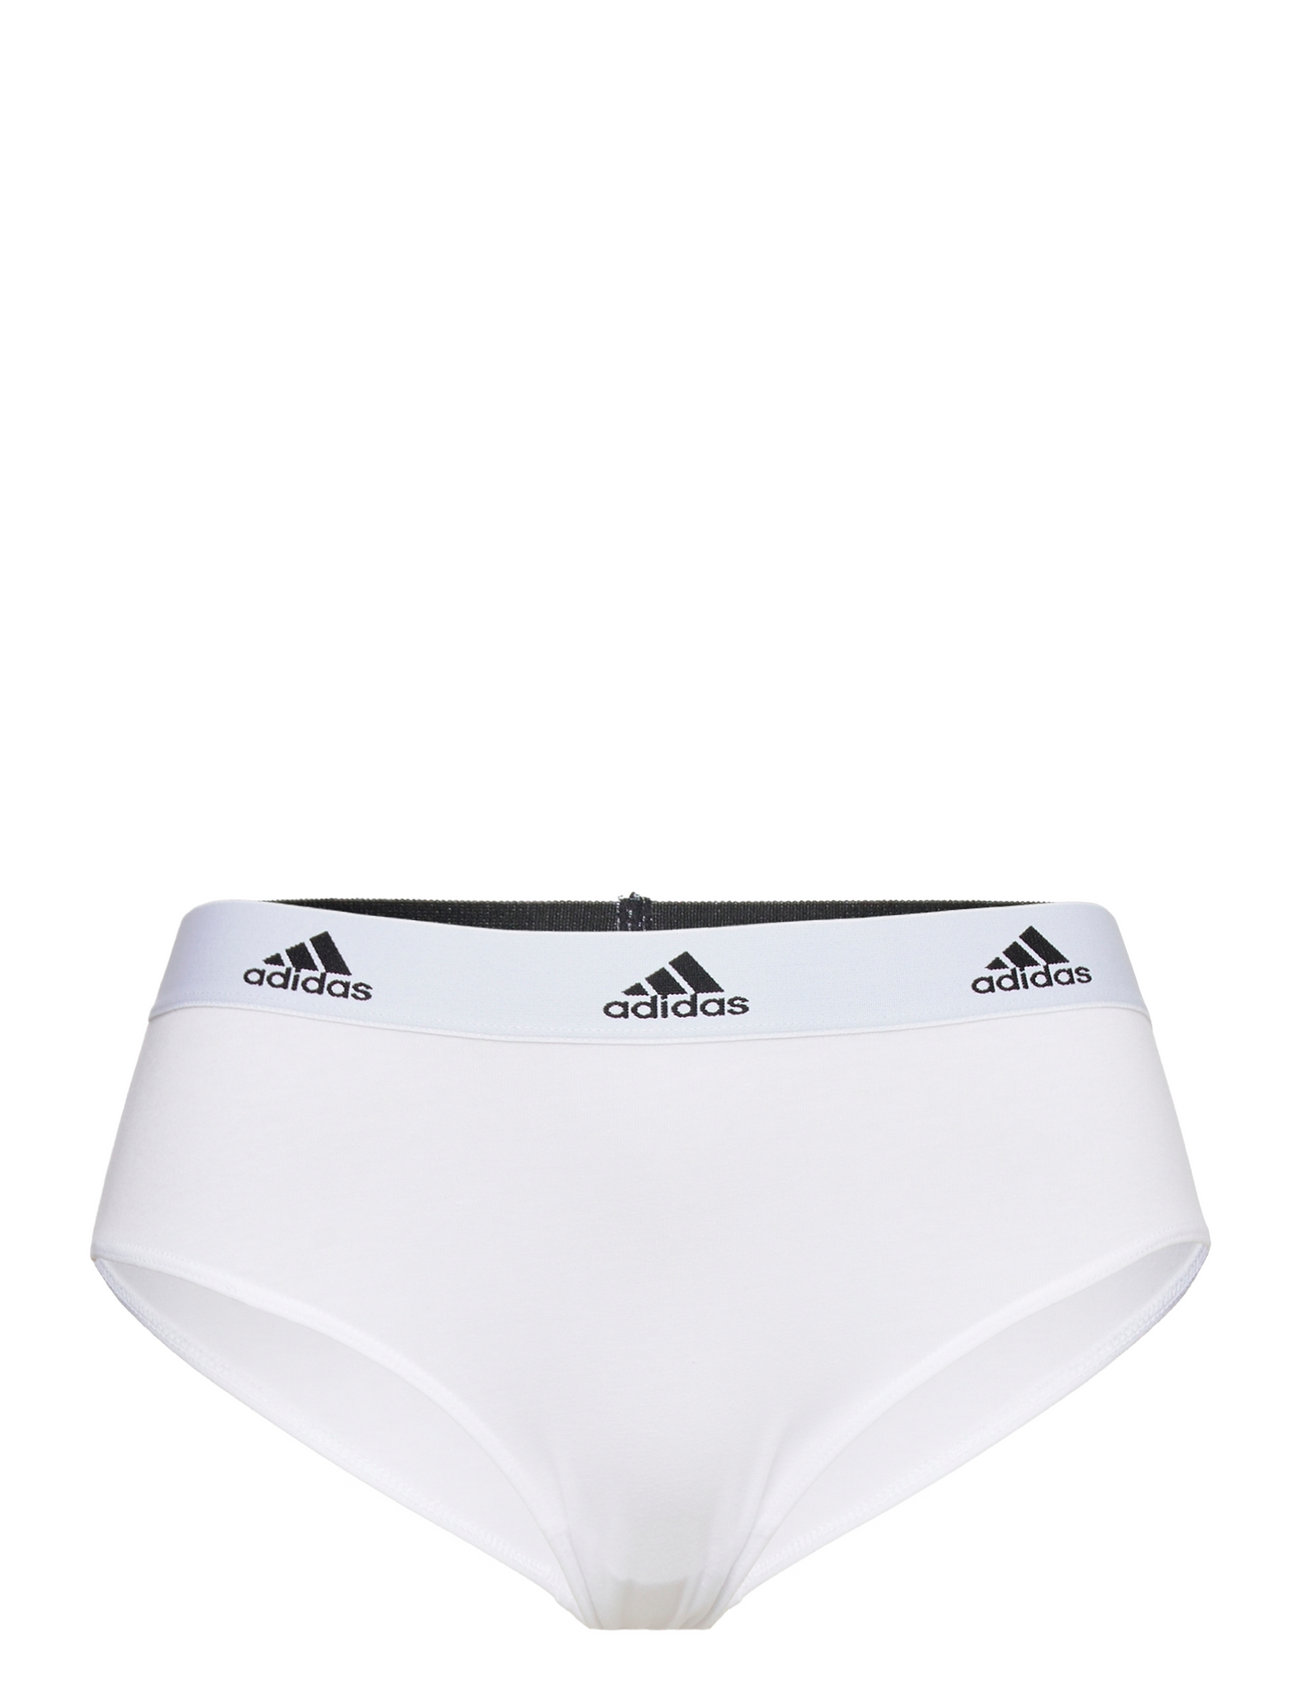 Brief Sport Panties Briefs White Adidas Underwear